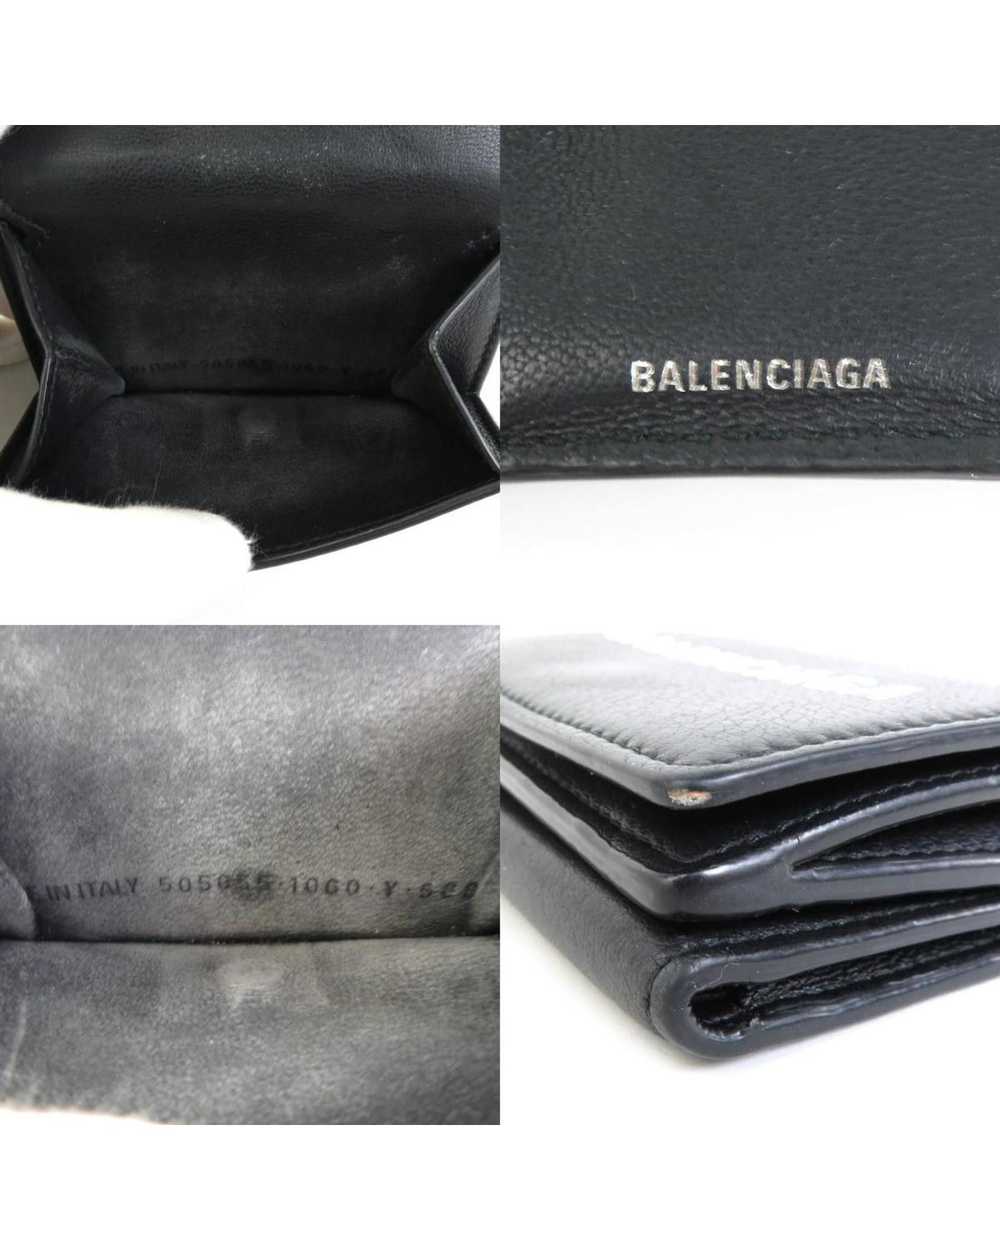 Balenciaga Cash Mini Wallet - image 5